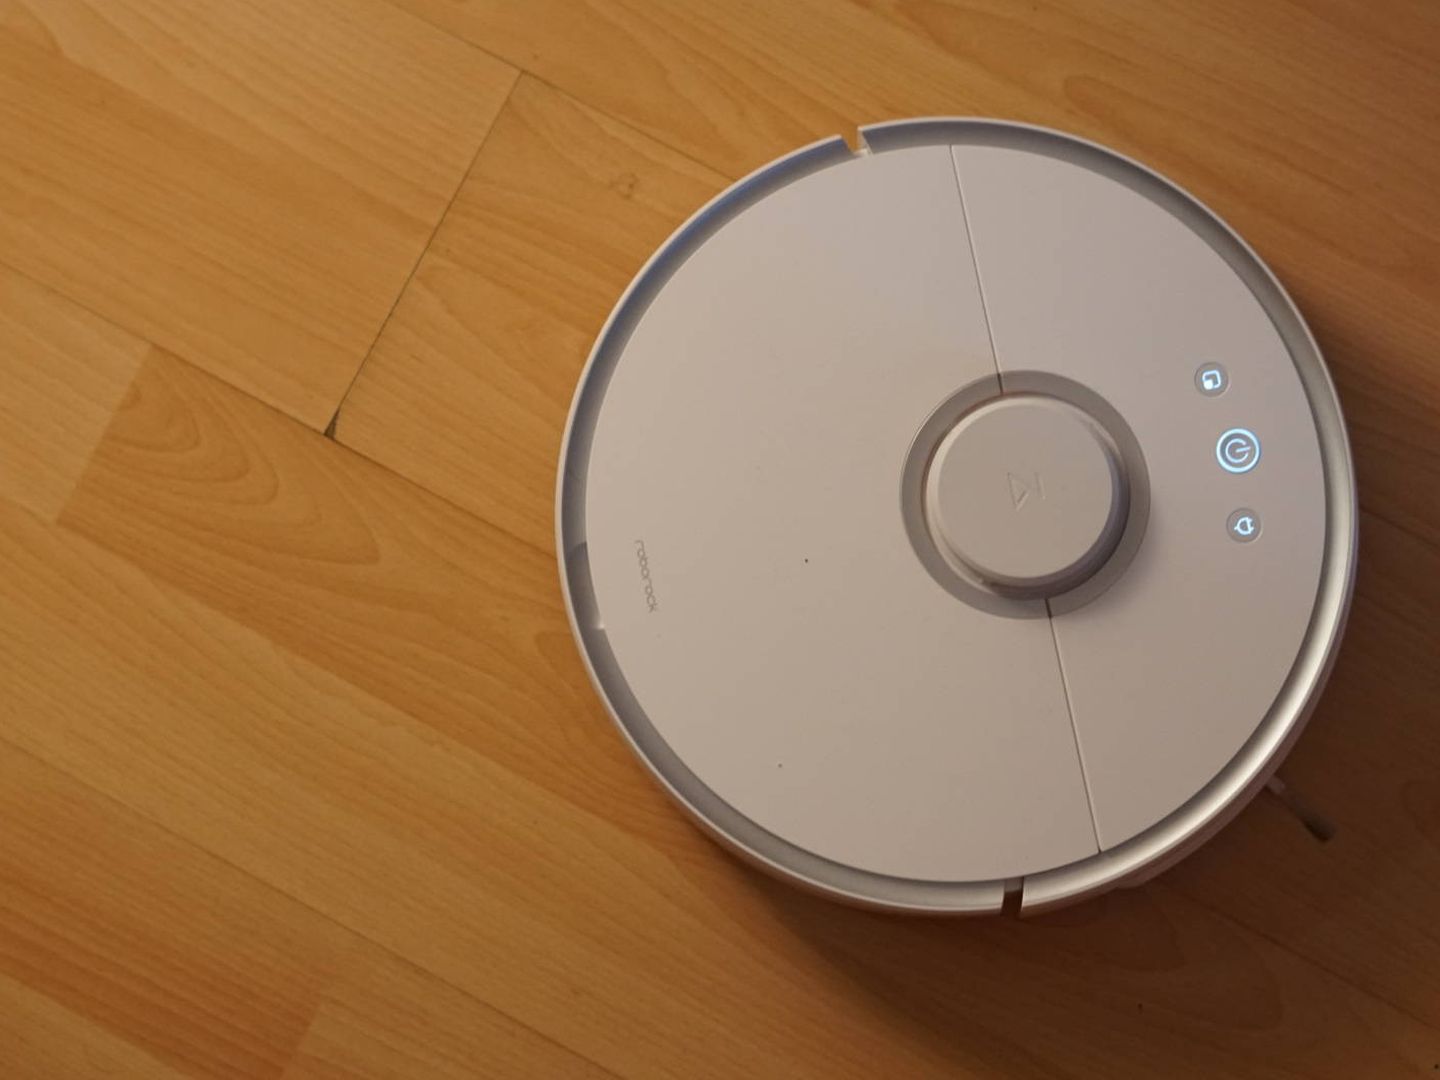 Probamos el robot aspirador de Xiaomi que limpia tu casa (y no tu bolsillo)